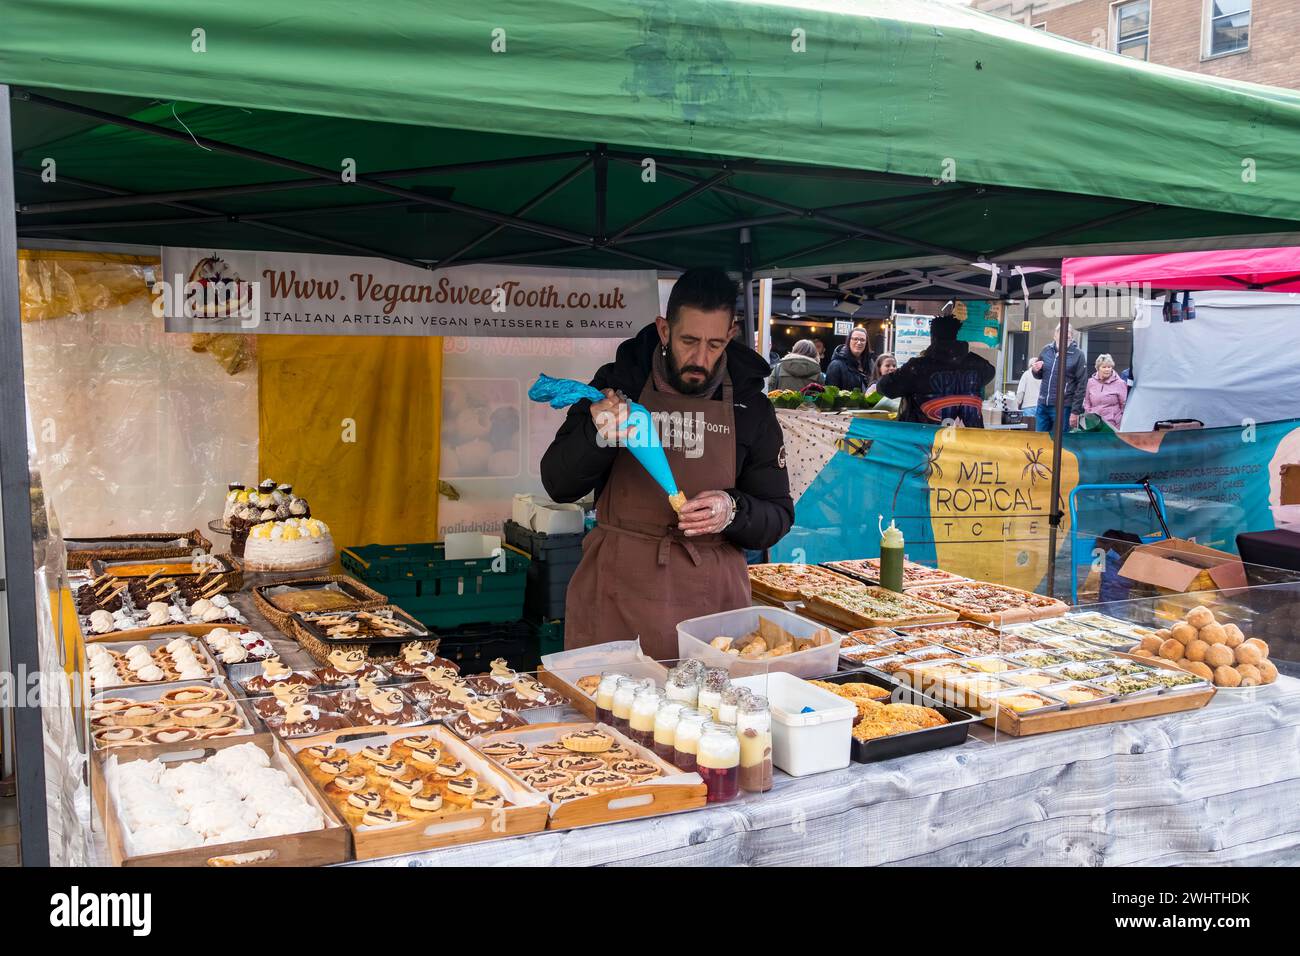 Stallhalter, der vegane Rahmbrötchen auf veganer Konditorei und Bäckereistand füllt, Cornhill Market, Lincoln City, Lincolnshire, England, UK Stockfoto